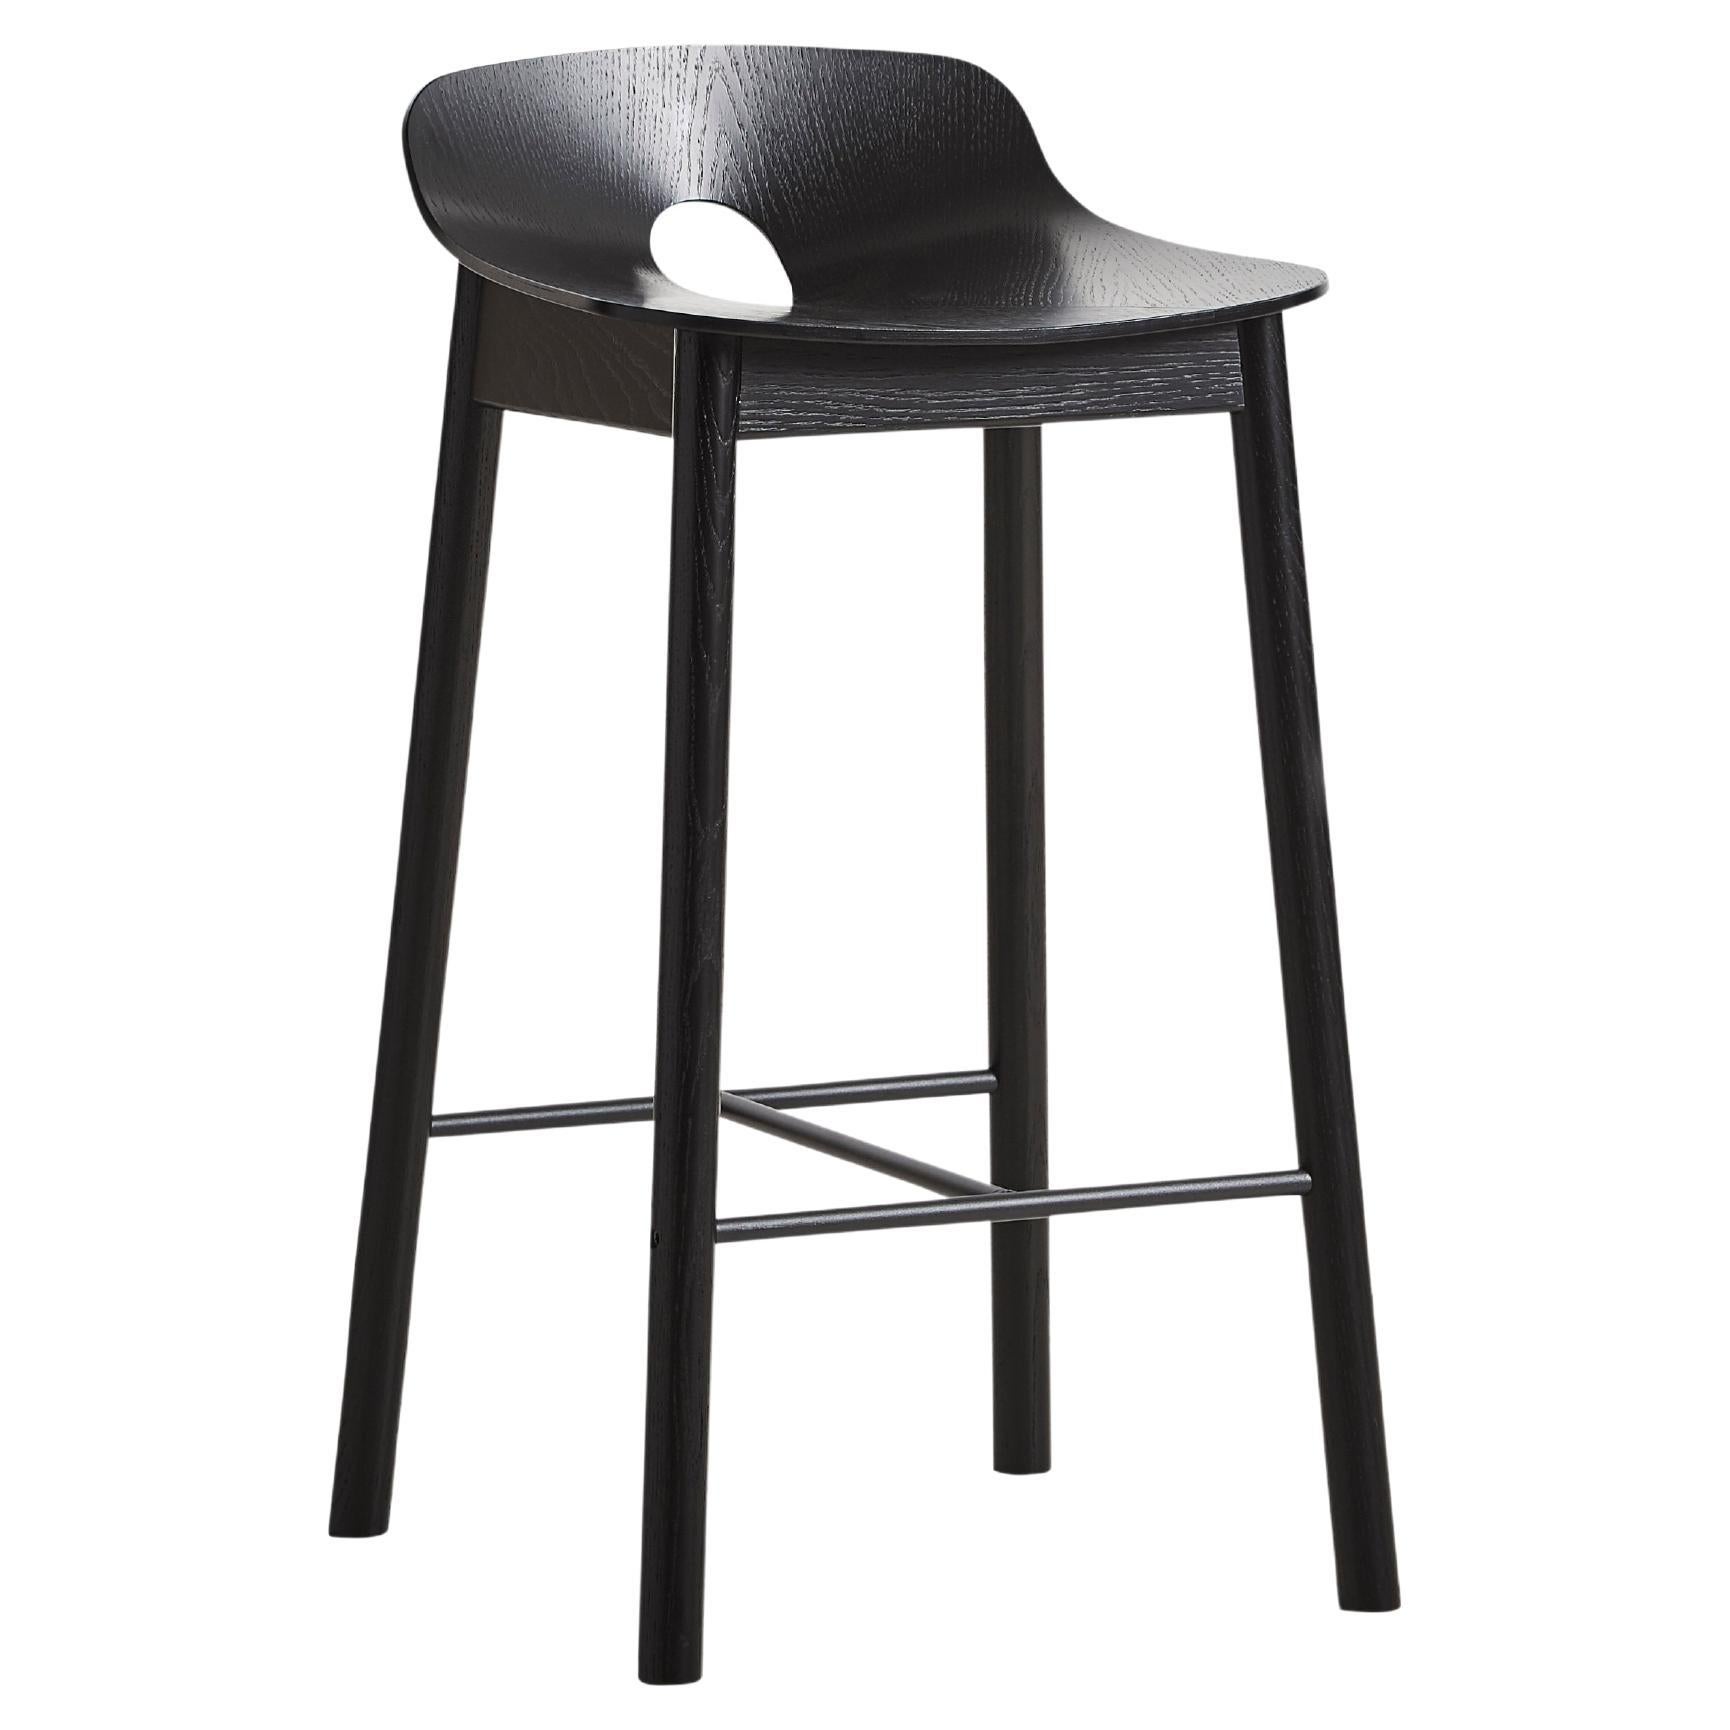 Black Ash Mono Counter Chair by Kasper Nyman